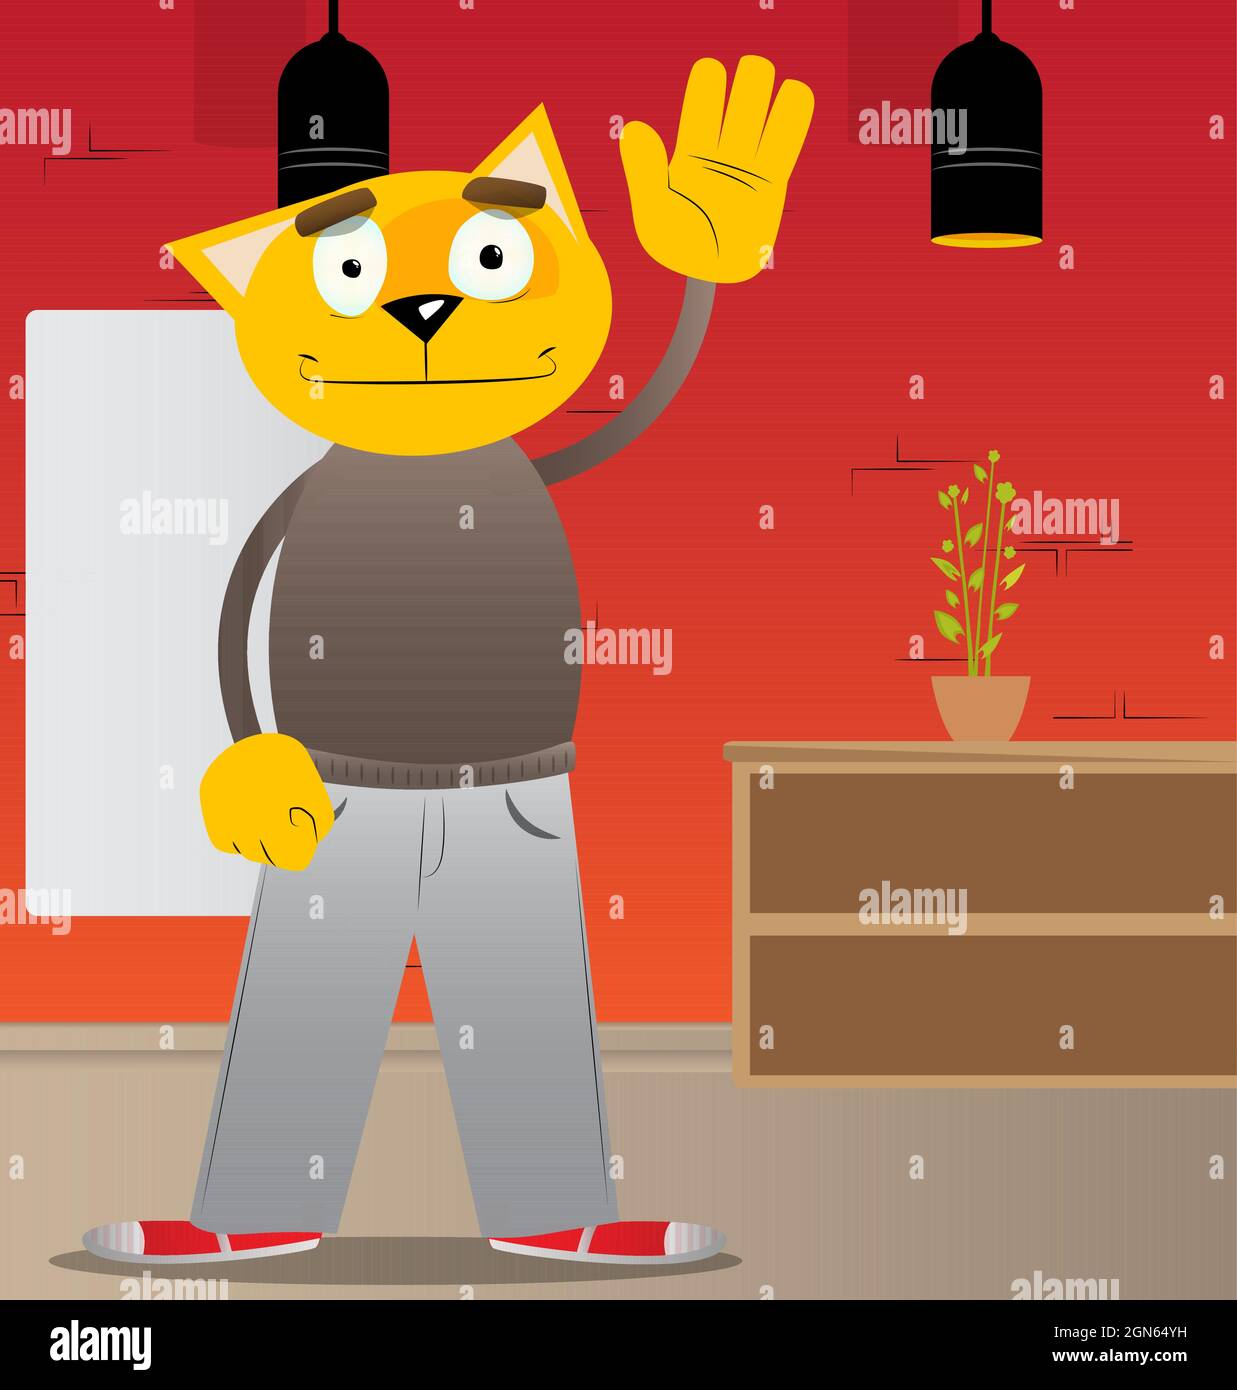 Drôle de chat de dessin animé avec la main de la main de la main. Illustration vectorielle. Jeune chaton aux cheveux orange et jaune mignon. Illustration de Vecteur